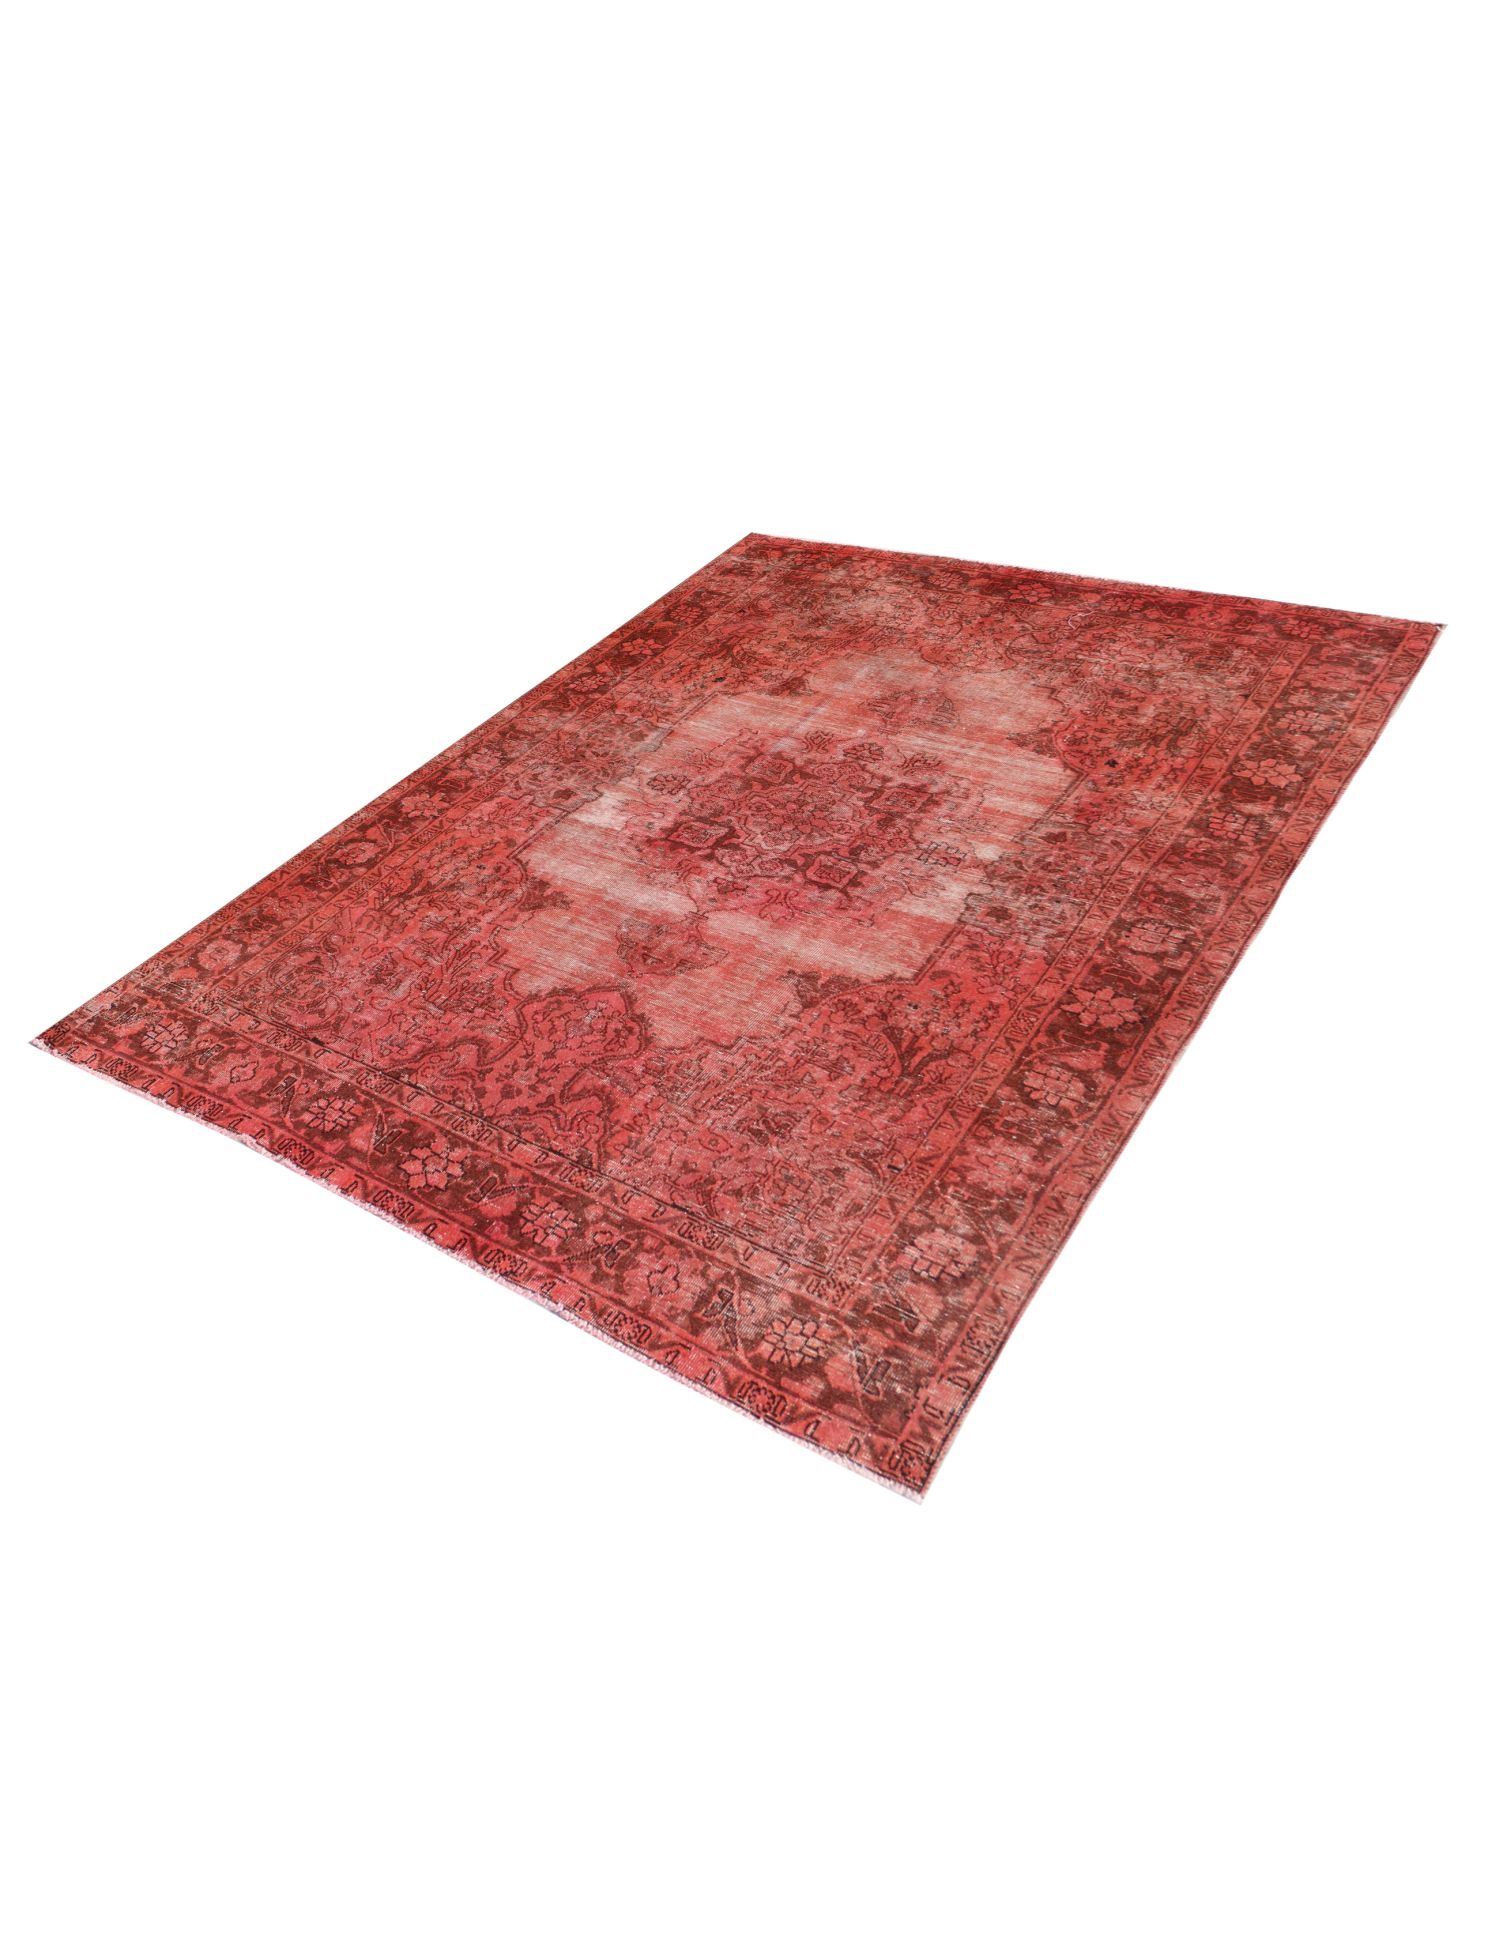 Περσικό Vintage Χαλί  Κόκκινο <br/>290 x 190 cm